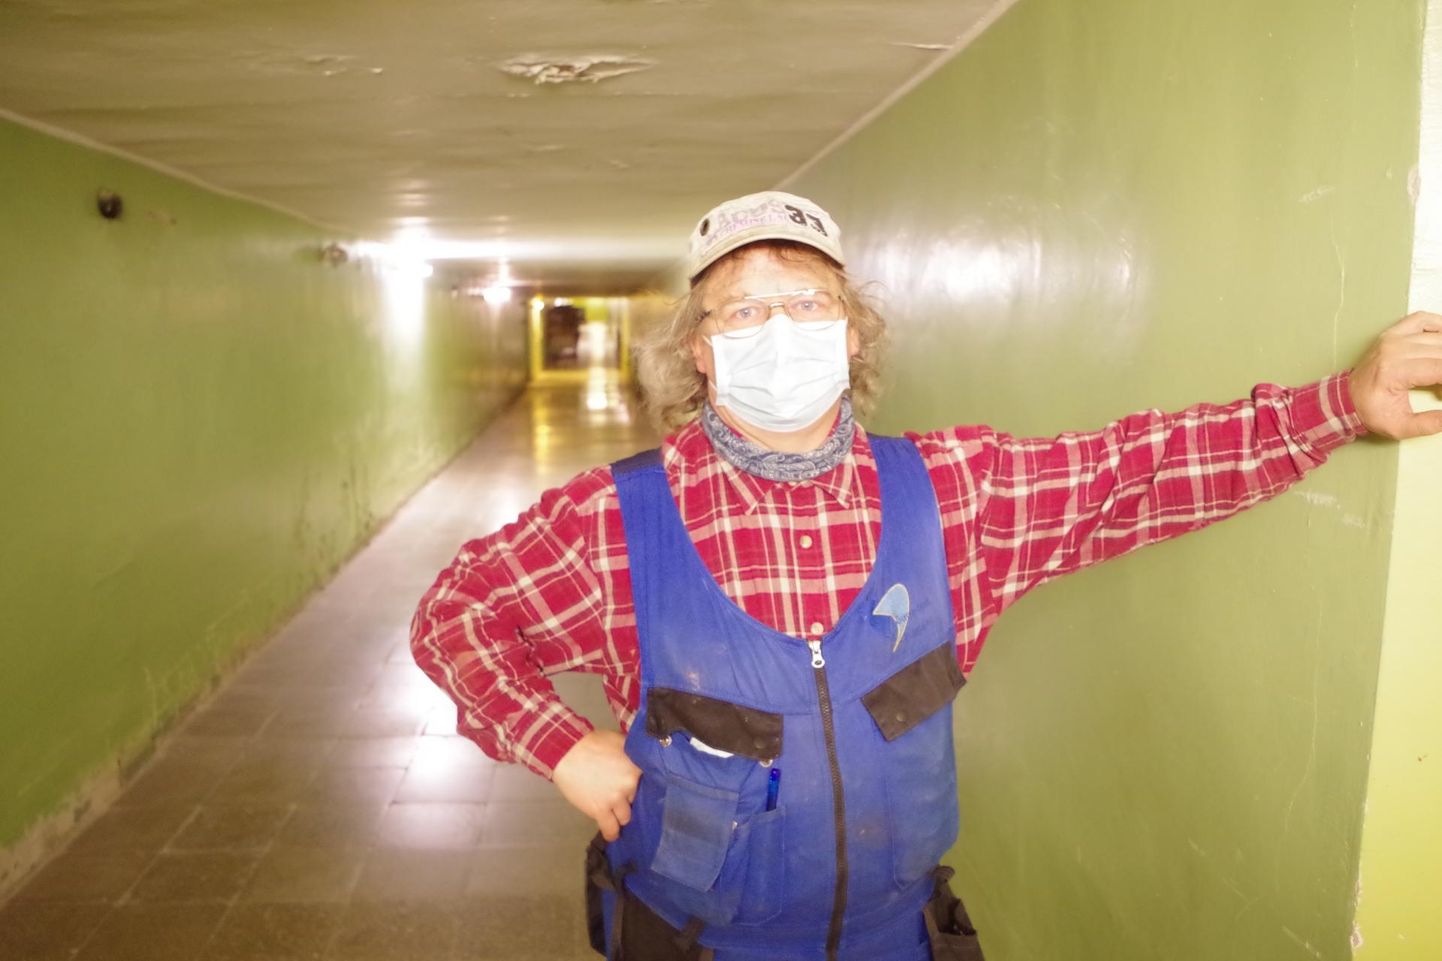 Lõuna-Eesti haigla elektriku Ago Pettai sõnul on tema selja taga olevat tunnelit korra ka varjendina kasutatud. See oli siis, kui haiglale pommiähvardus tehti.